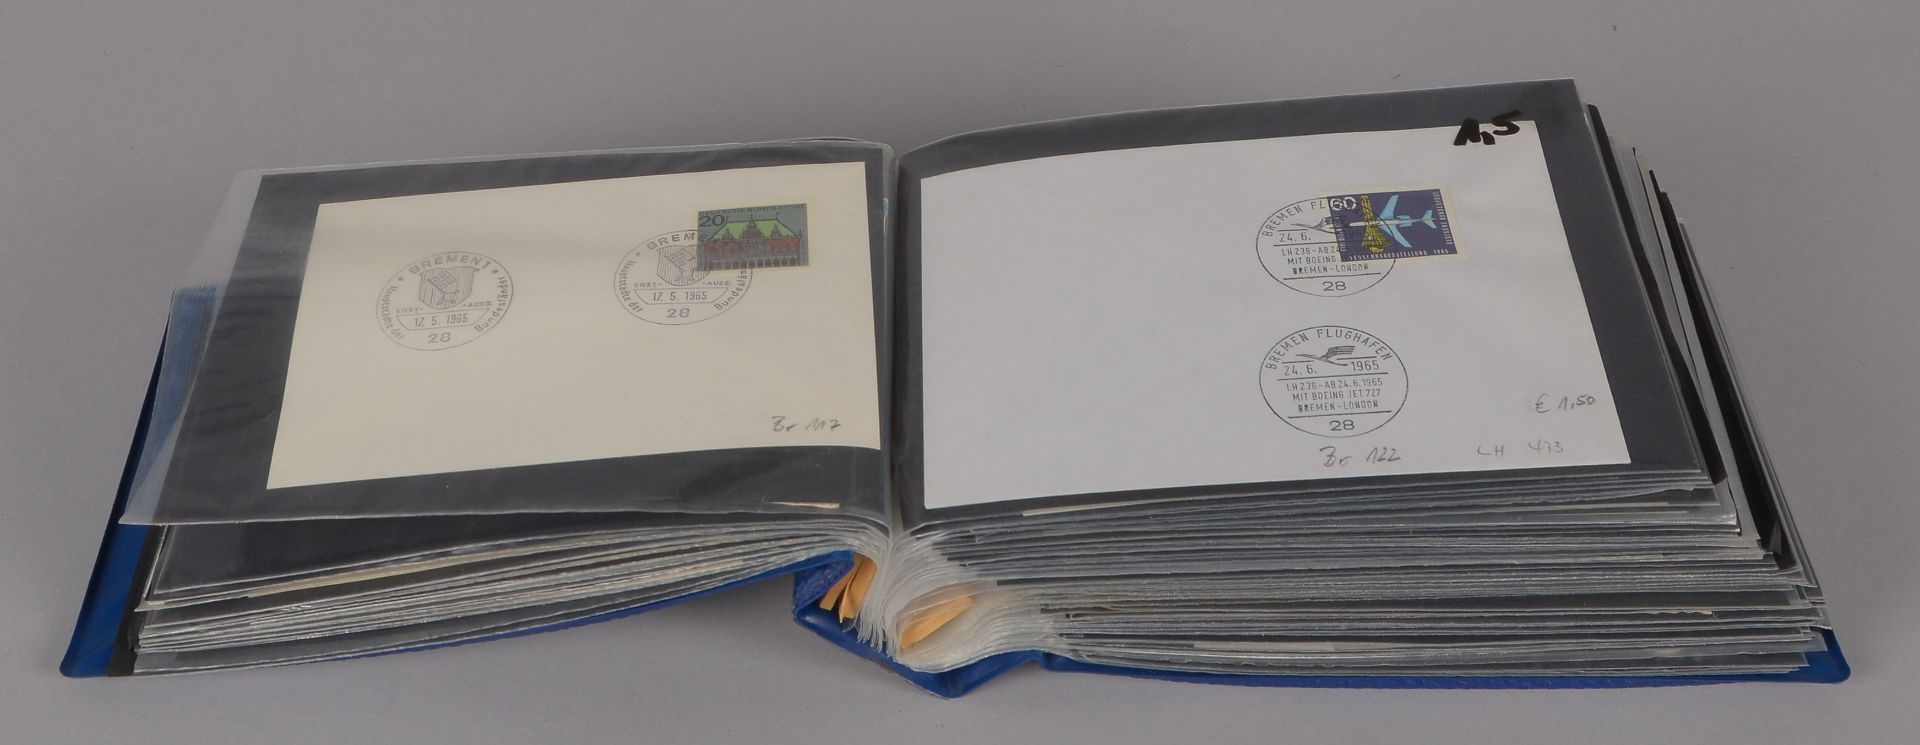 Kleine Sonderstempel-Sammlung, 1949 - 2003: Stempel auf Briefen der jeweiligen Zeit, ca. 200 Stück